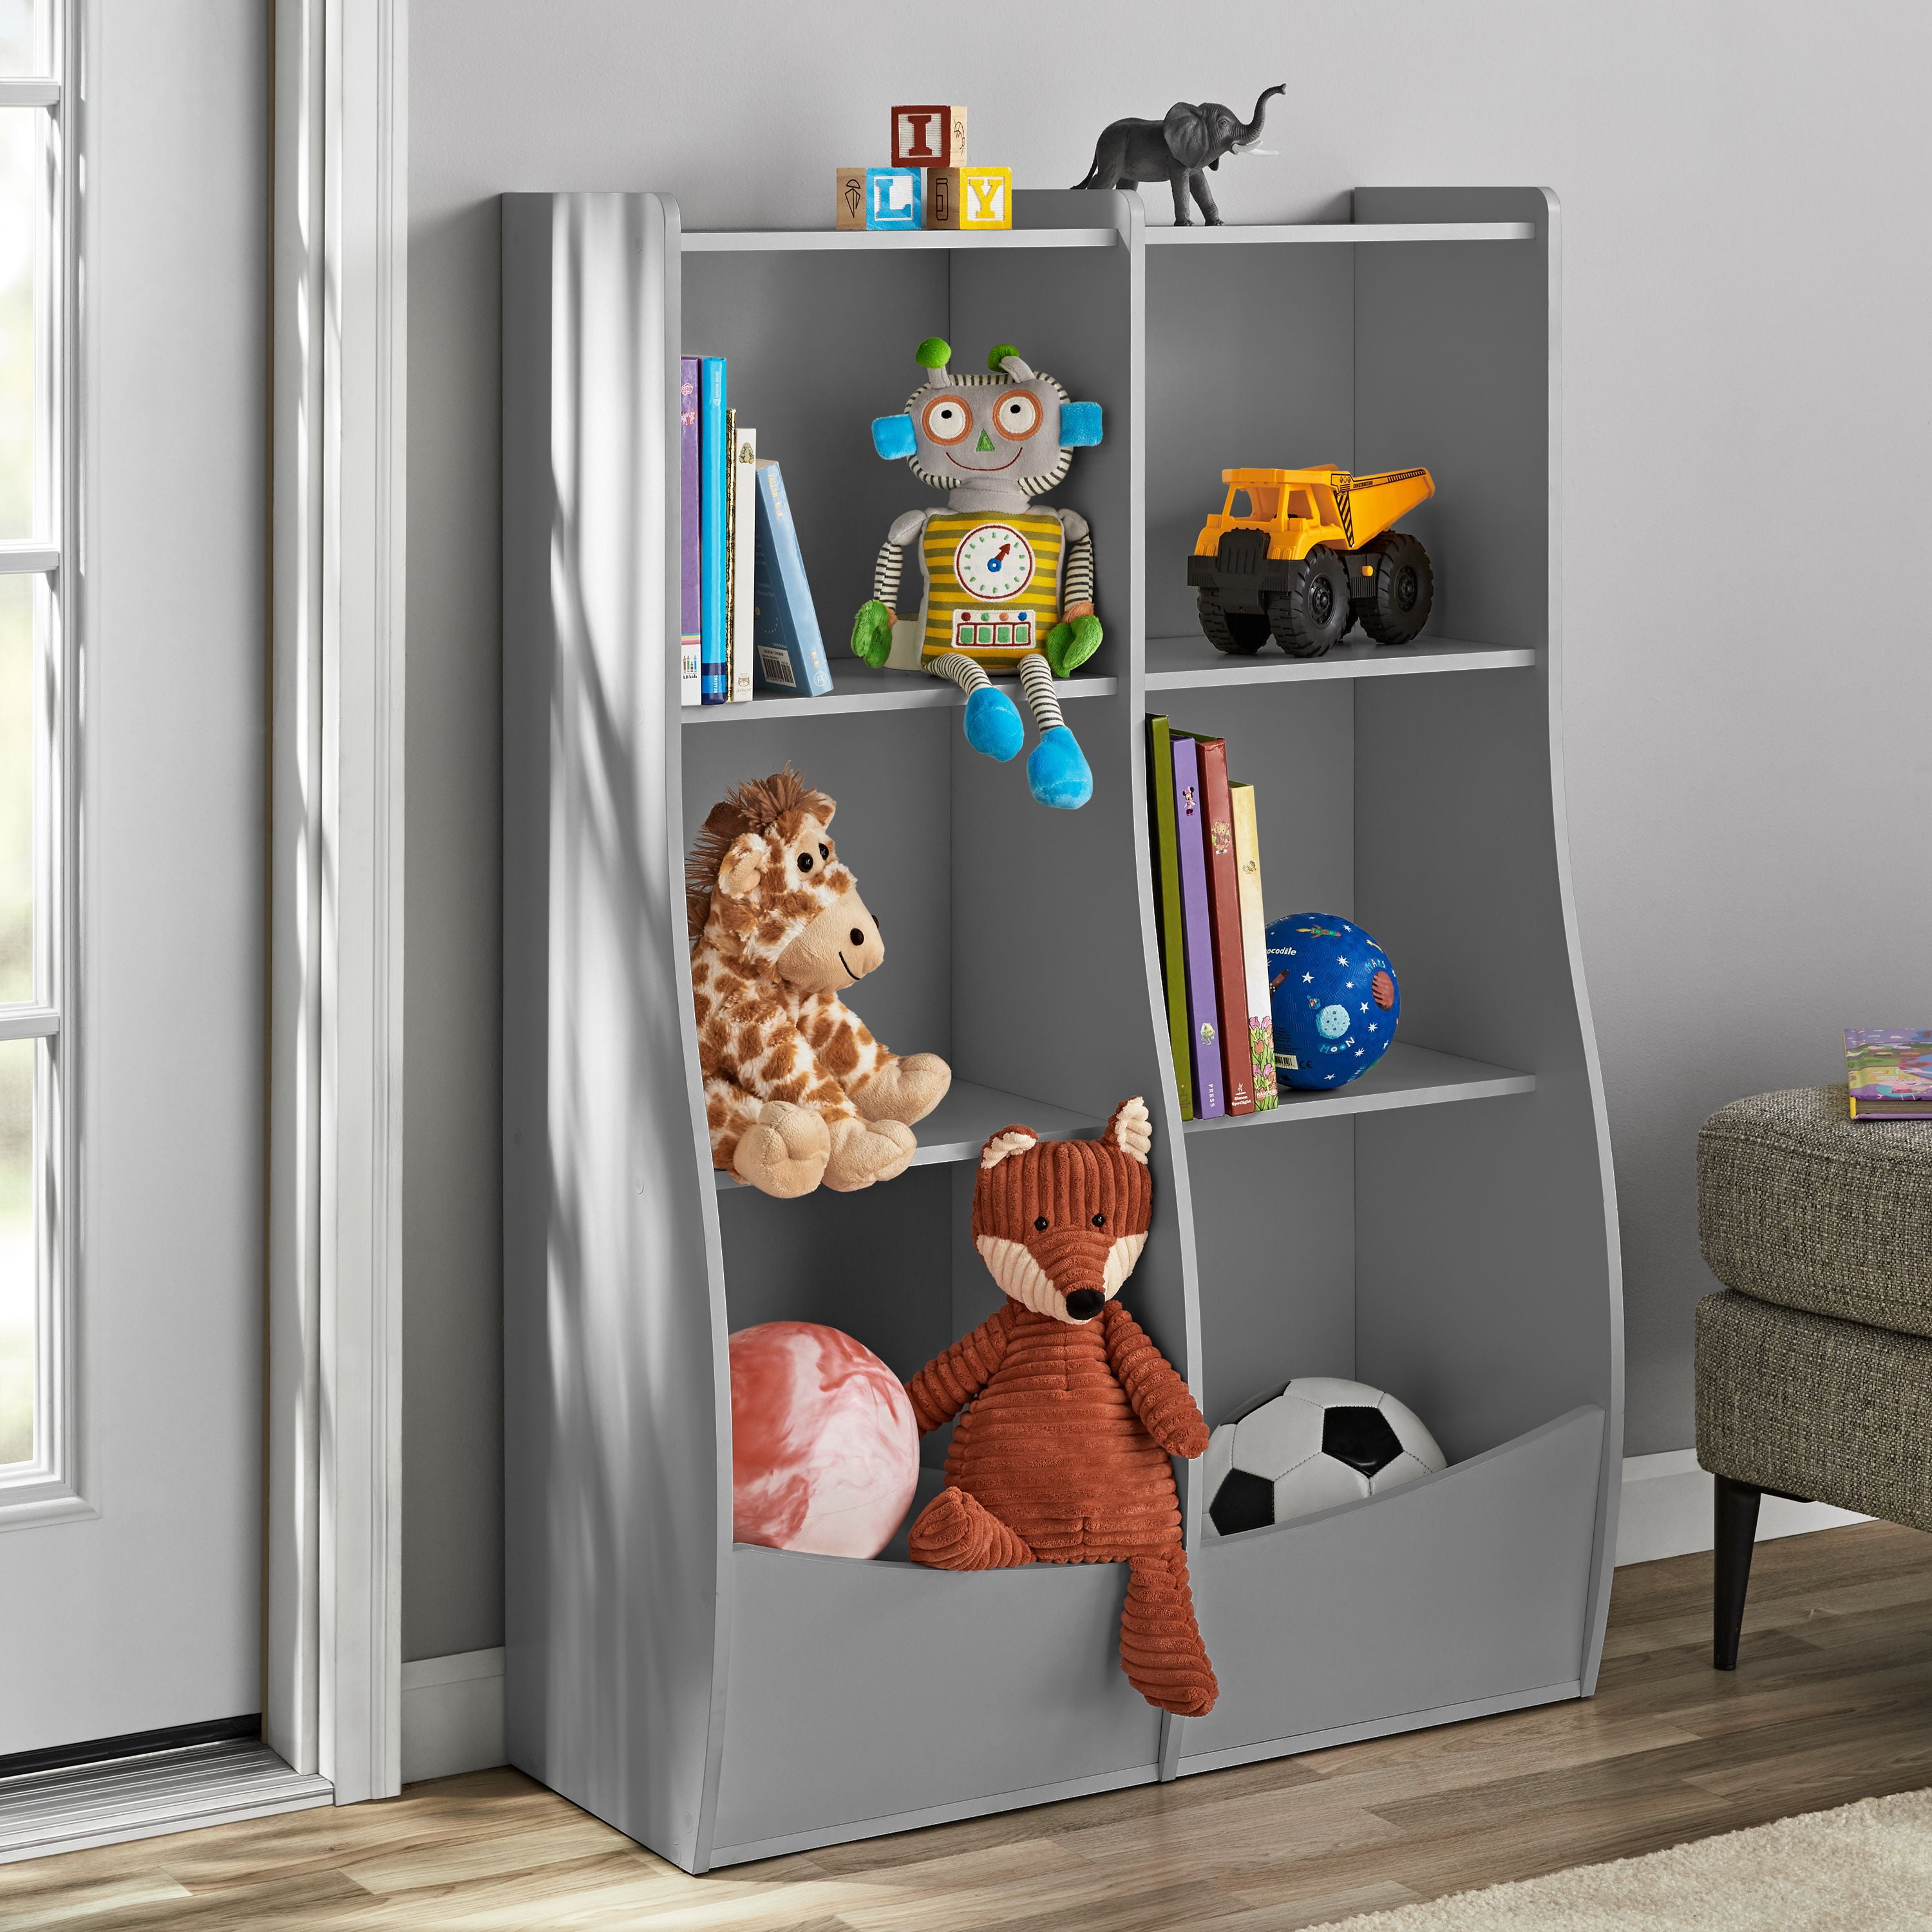 Your Zone Divided Cubbie Storage, Toy Storage Bin Bookcase